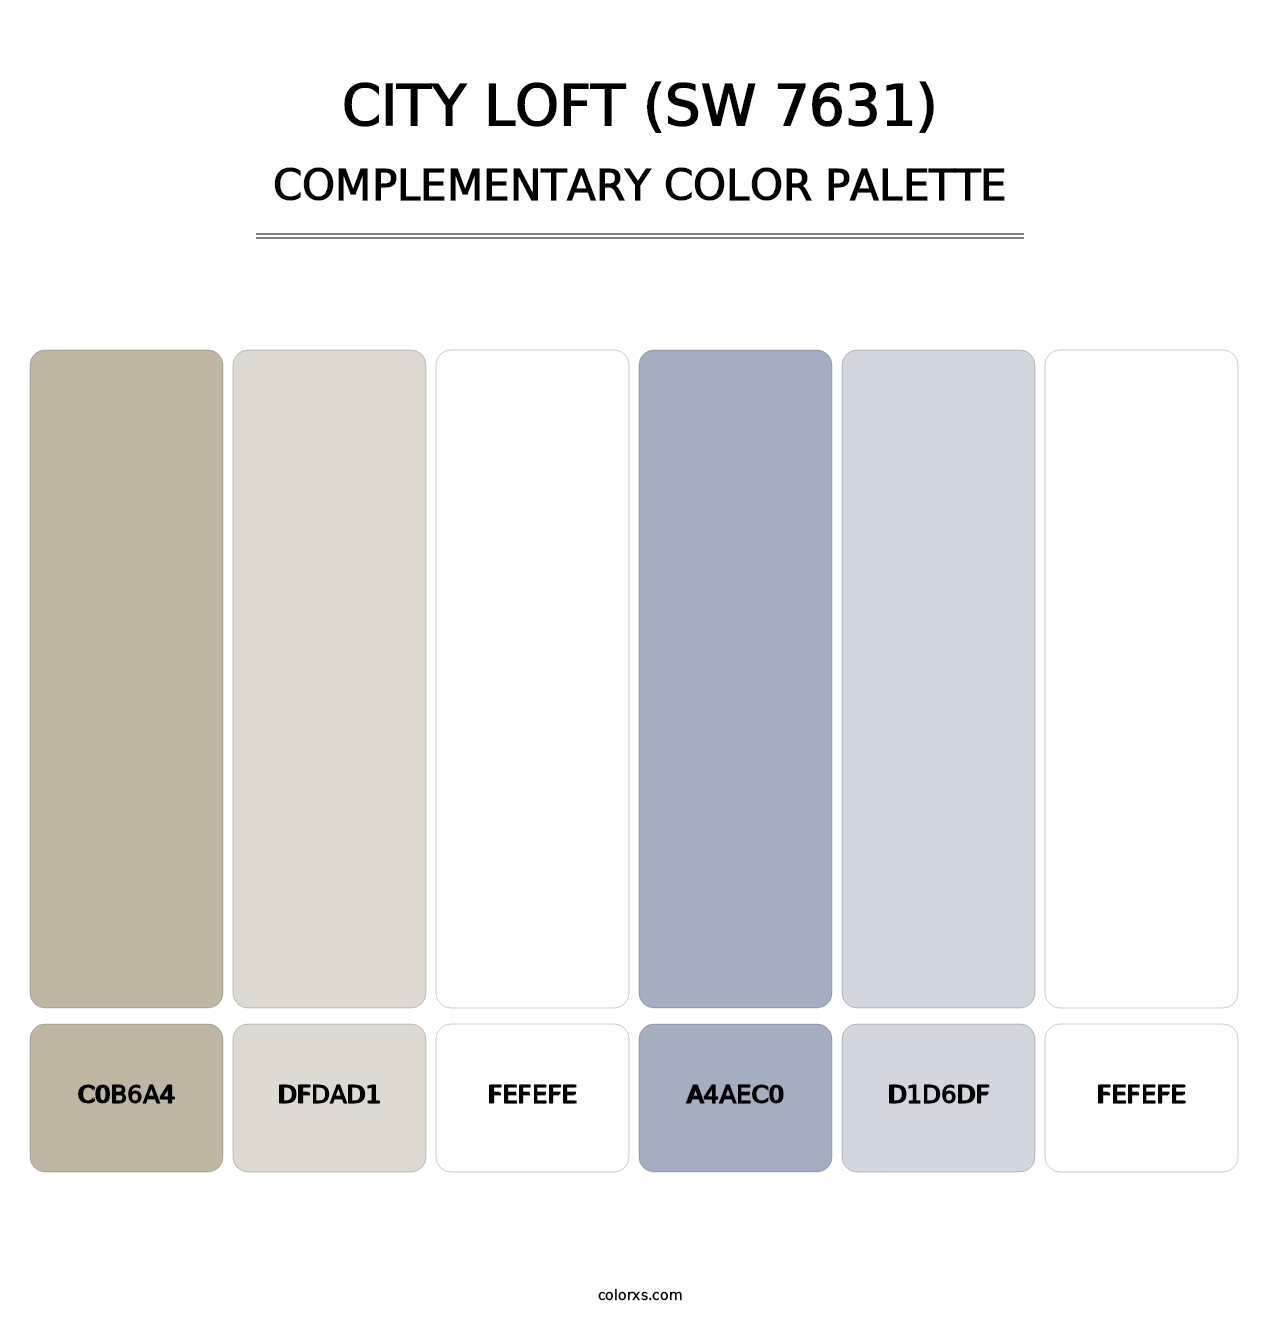 City Loft (SW 7631) - Complementary Color Palette